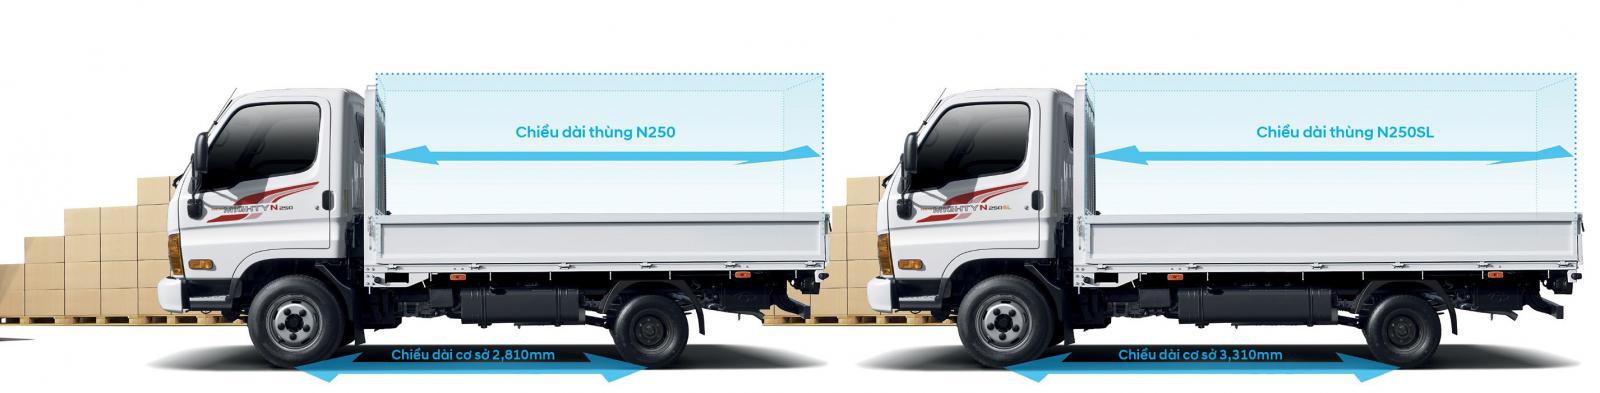 Hyundai New Mighty N250SL cải tiến chiều dài thùng xe tăng lên 4,3m